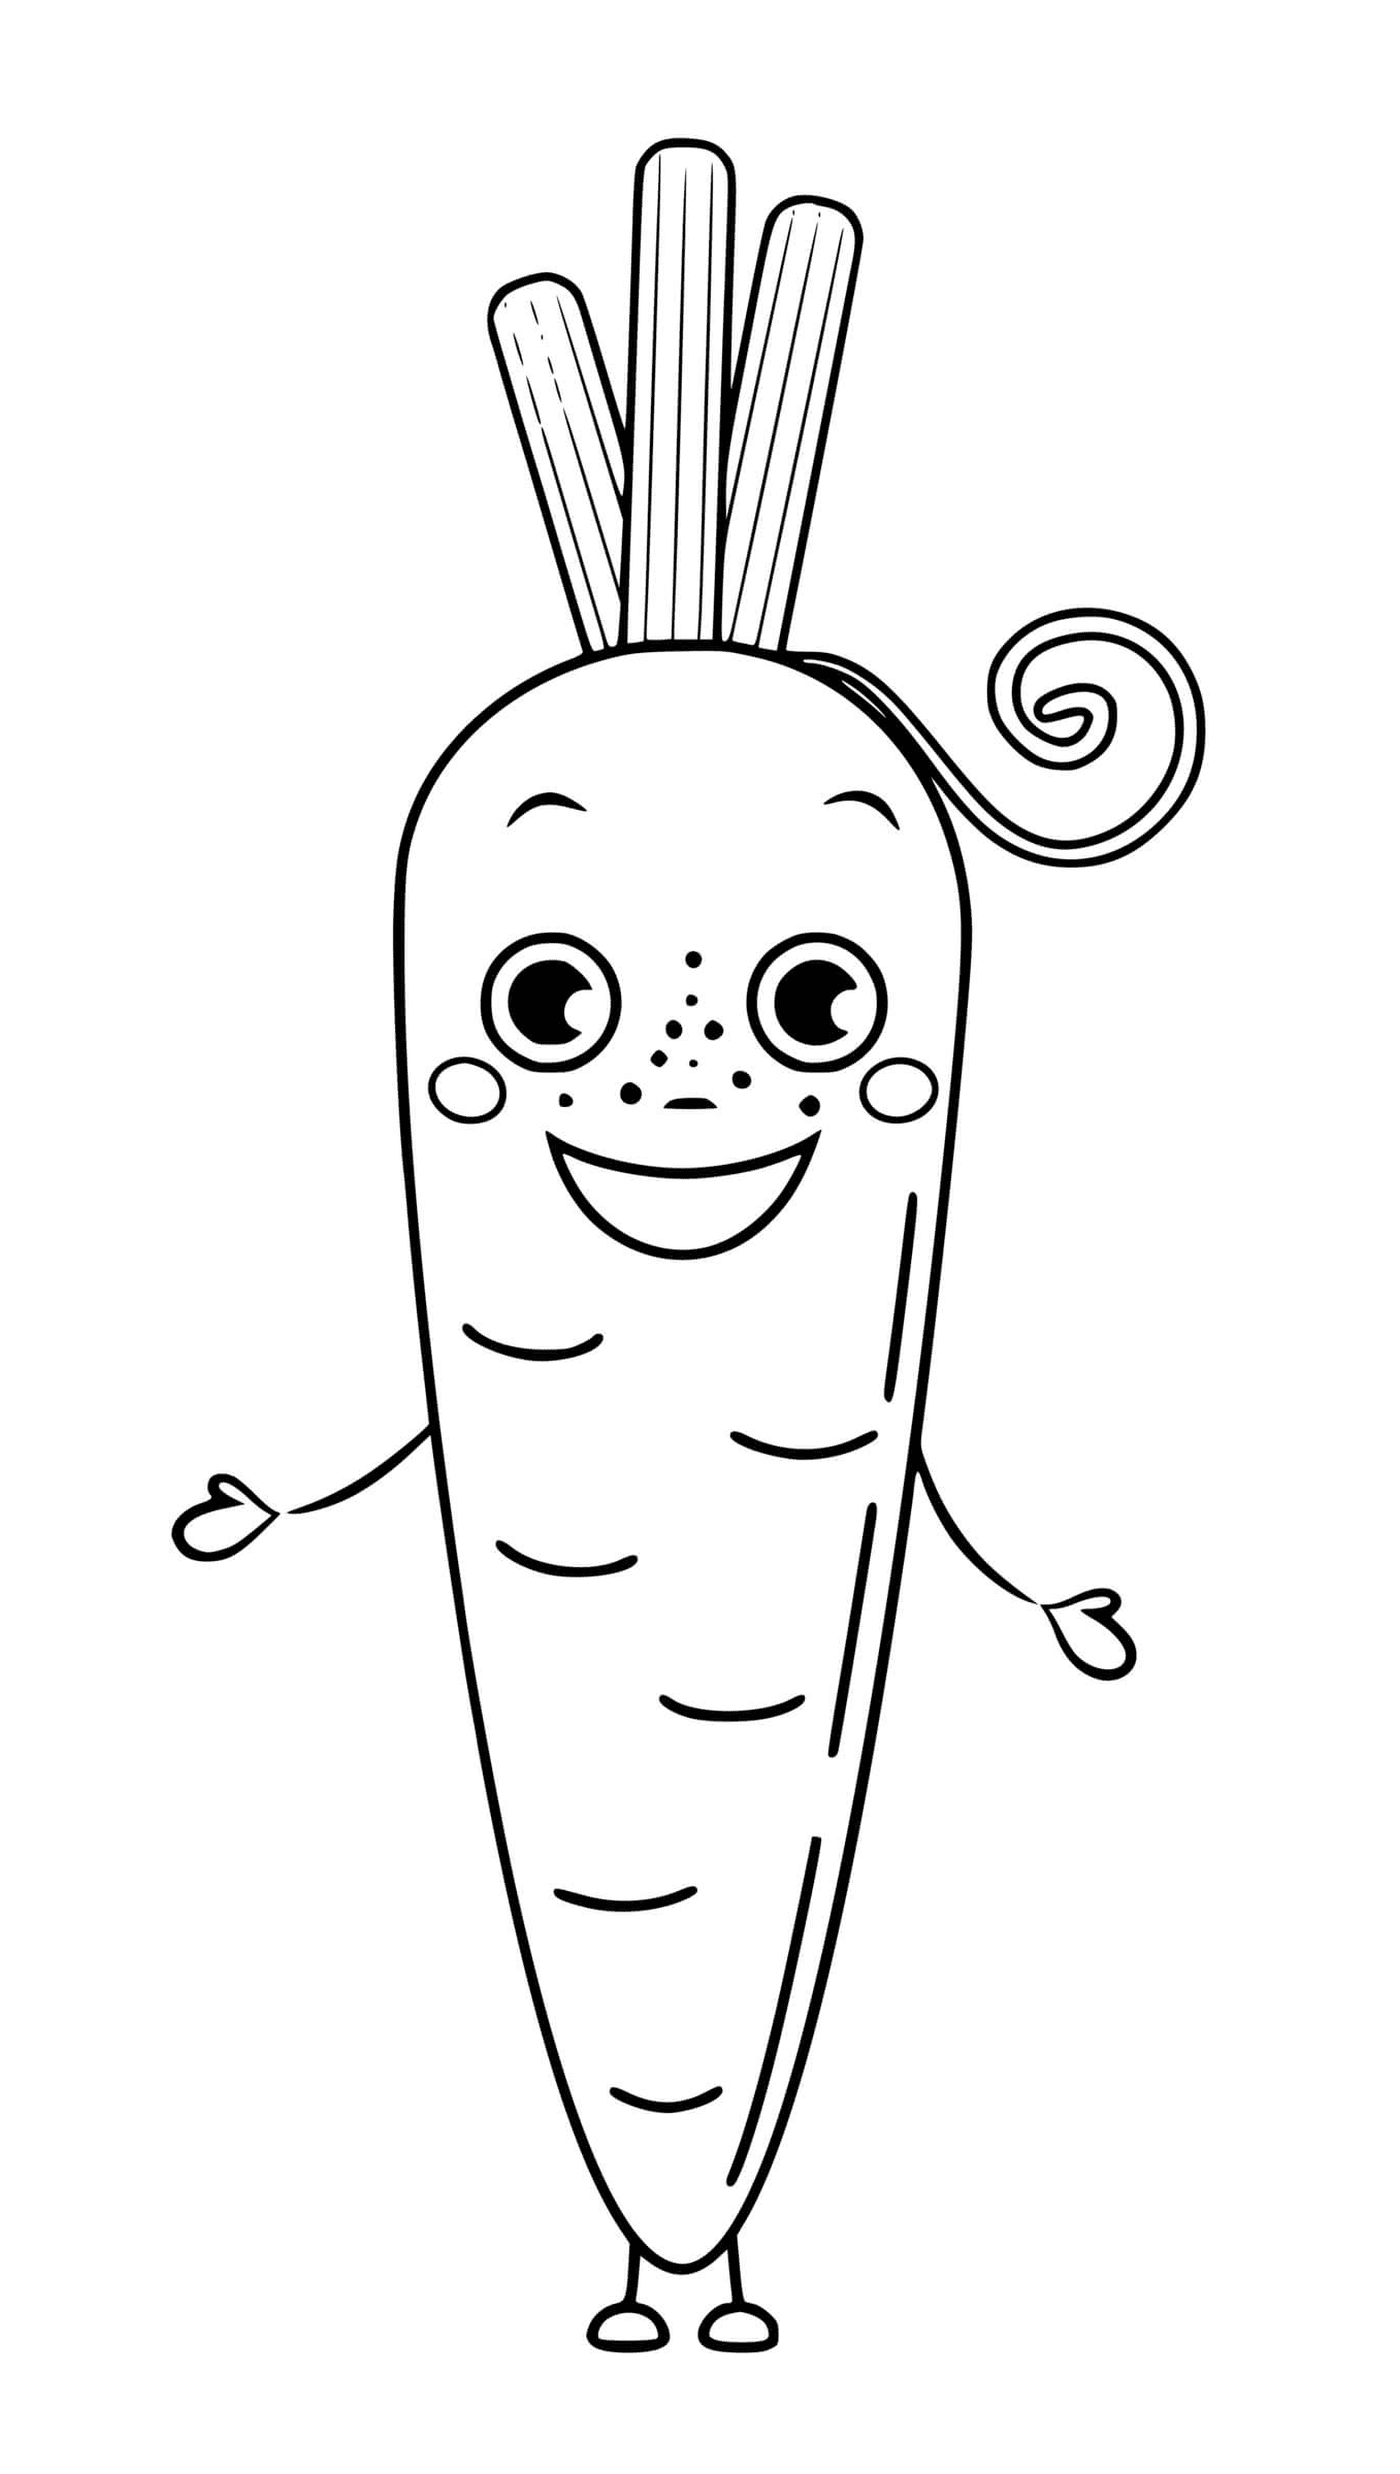  Овощная морковь с глазами и улыбкой, морковка с кудрявым хвостом 